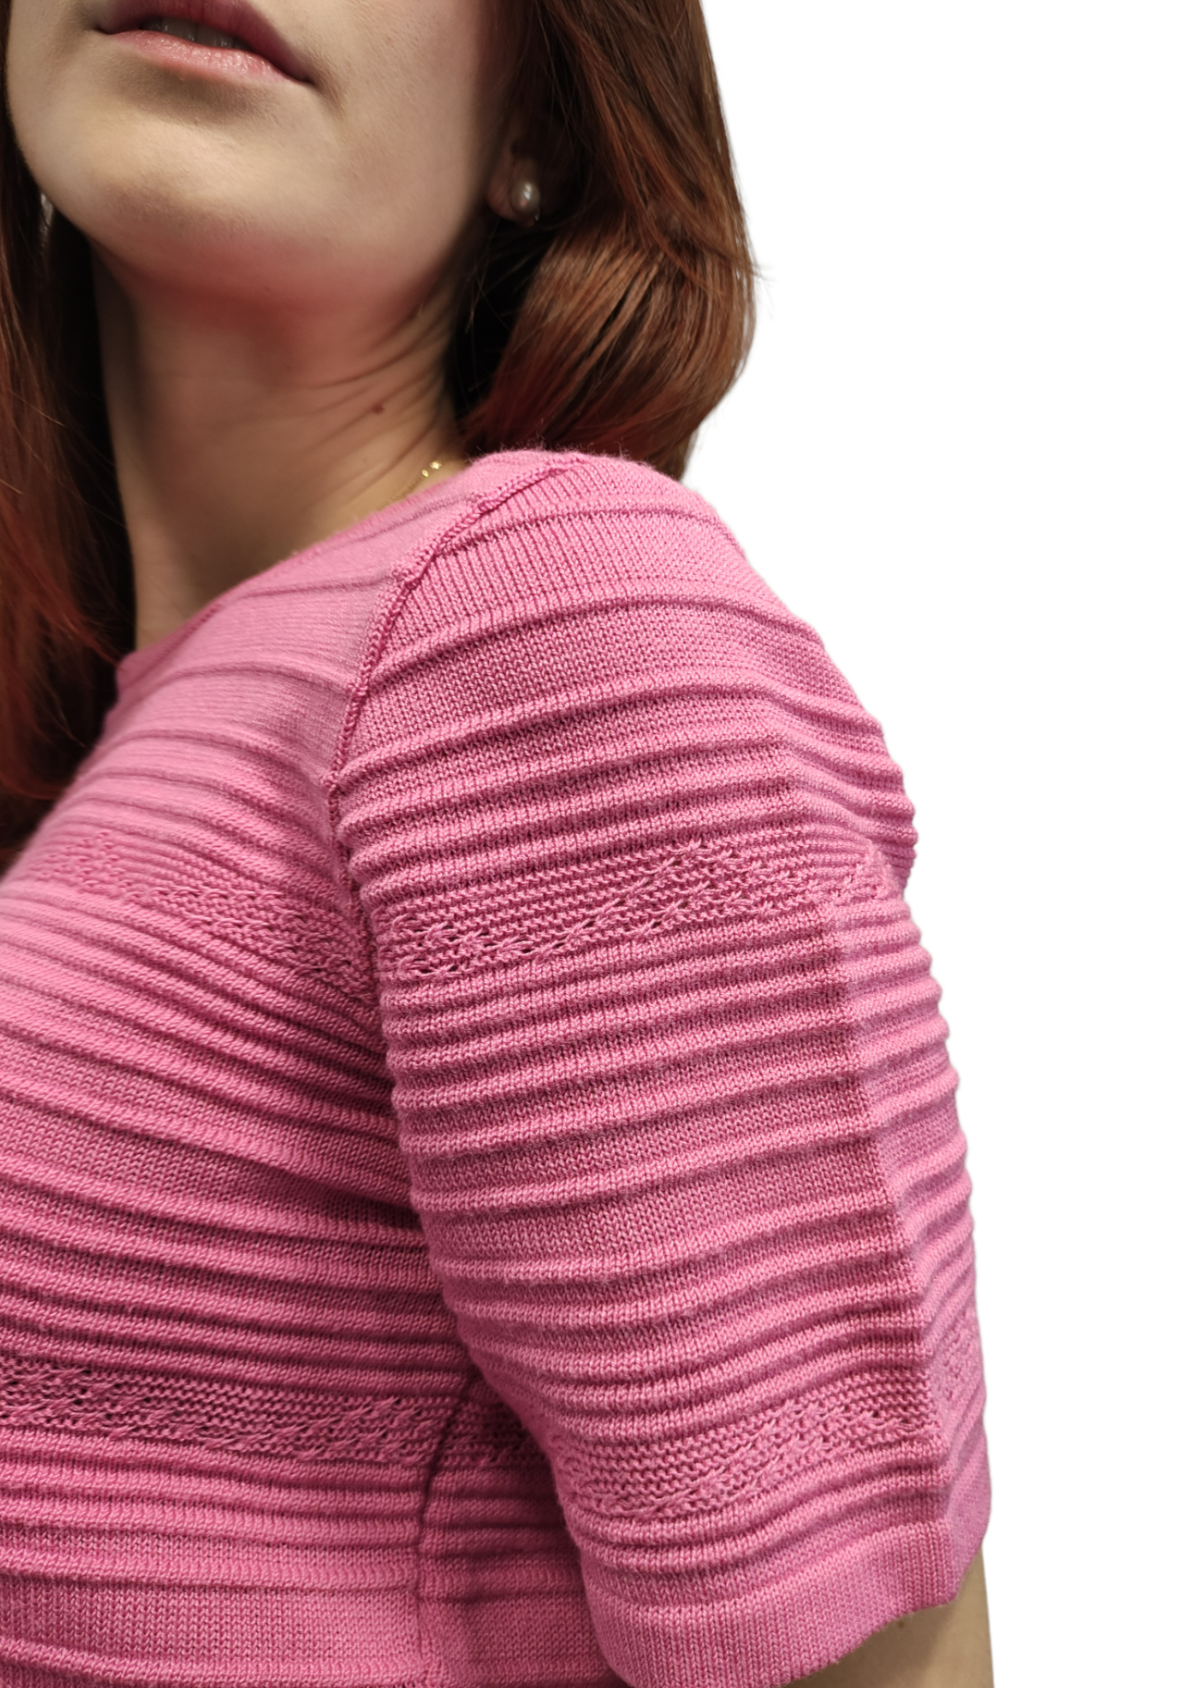 Κοντομάνικη, Γυναικεία Πλεκτή Μπλούζα SIXTH SENSE σε Ροζ χρώμα (Medium)